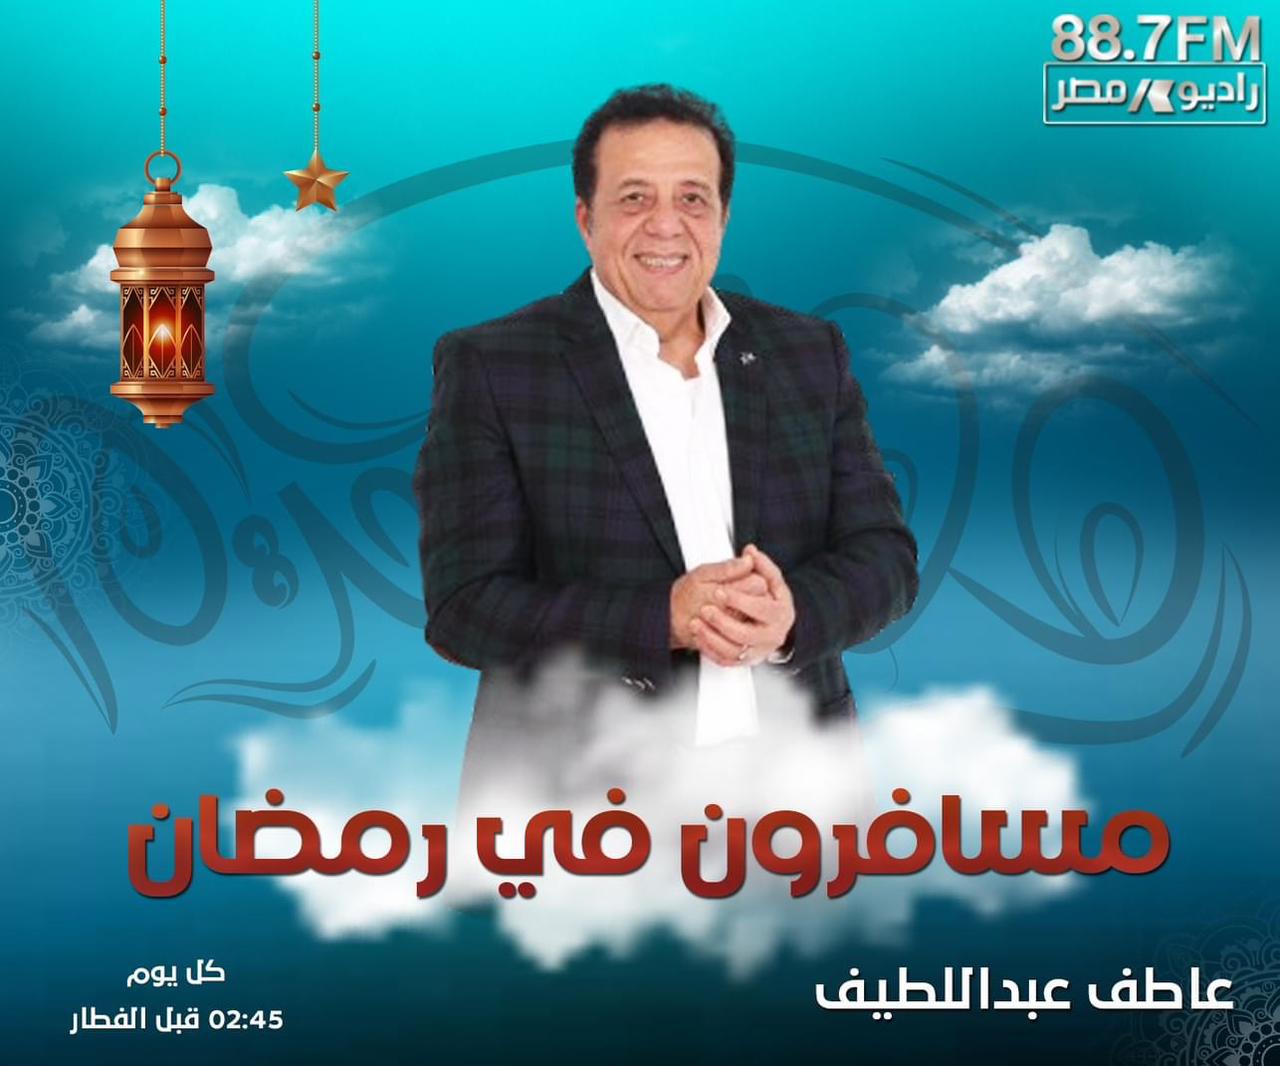 "مسافرون في رمضان".. برنامج سياحي ترفيهي على راديو مصر يوميًا خلال الشهر المبارك